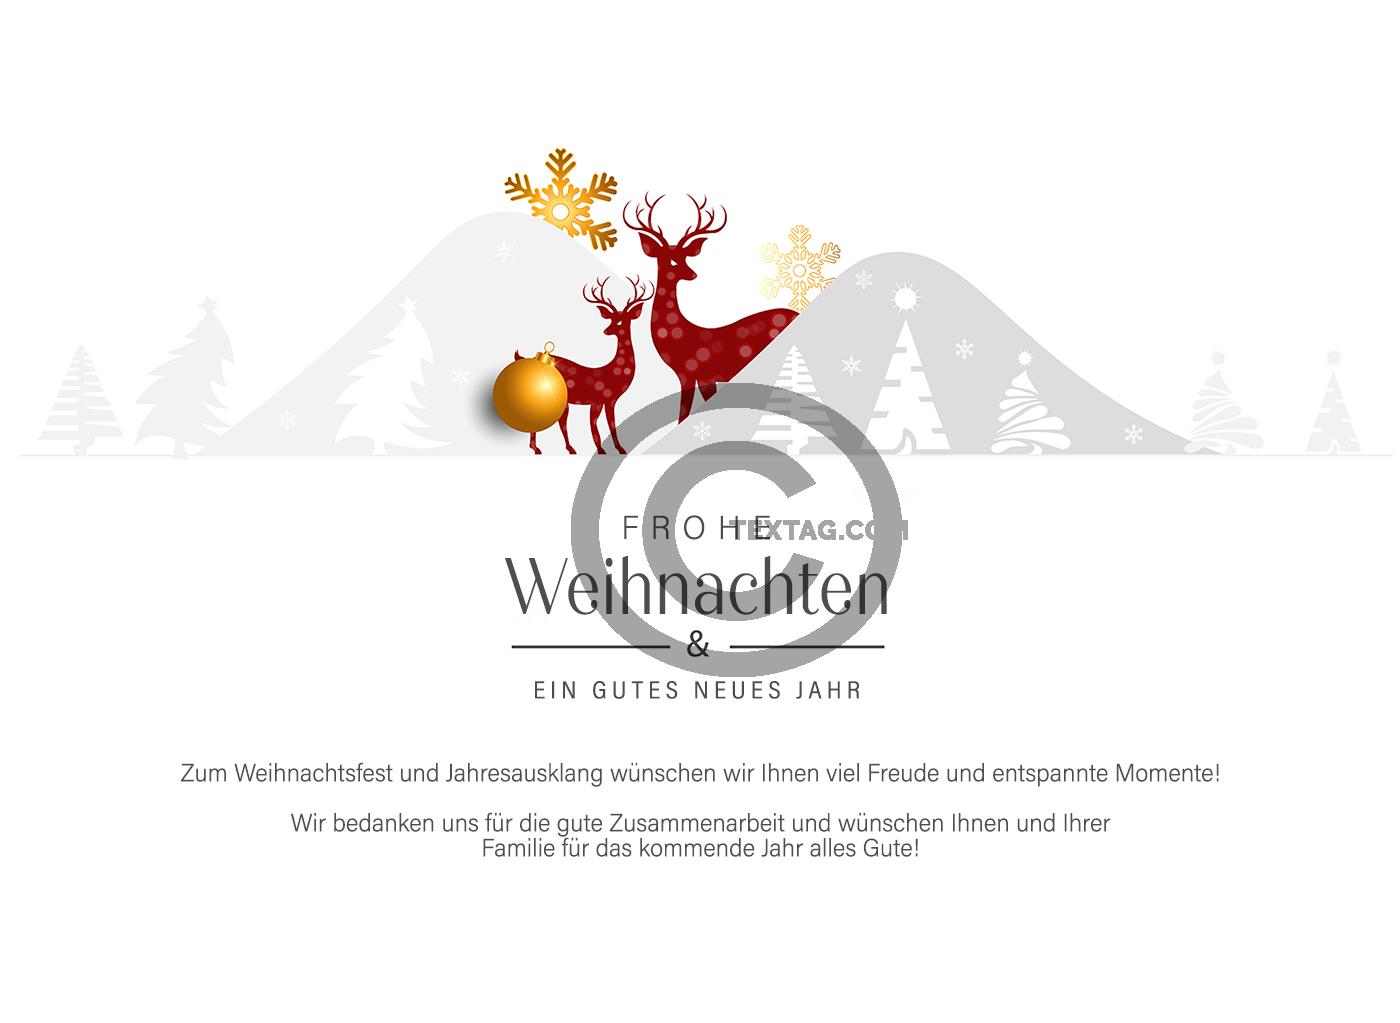 geschäftliche Weihnachts E-Card in Rot, Weiß, Gold, mit Hirsch, ohne Werbung, mit Spruch (917) 